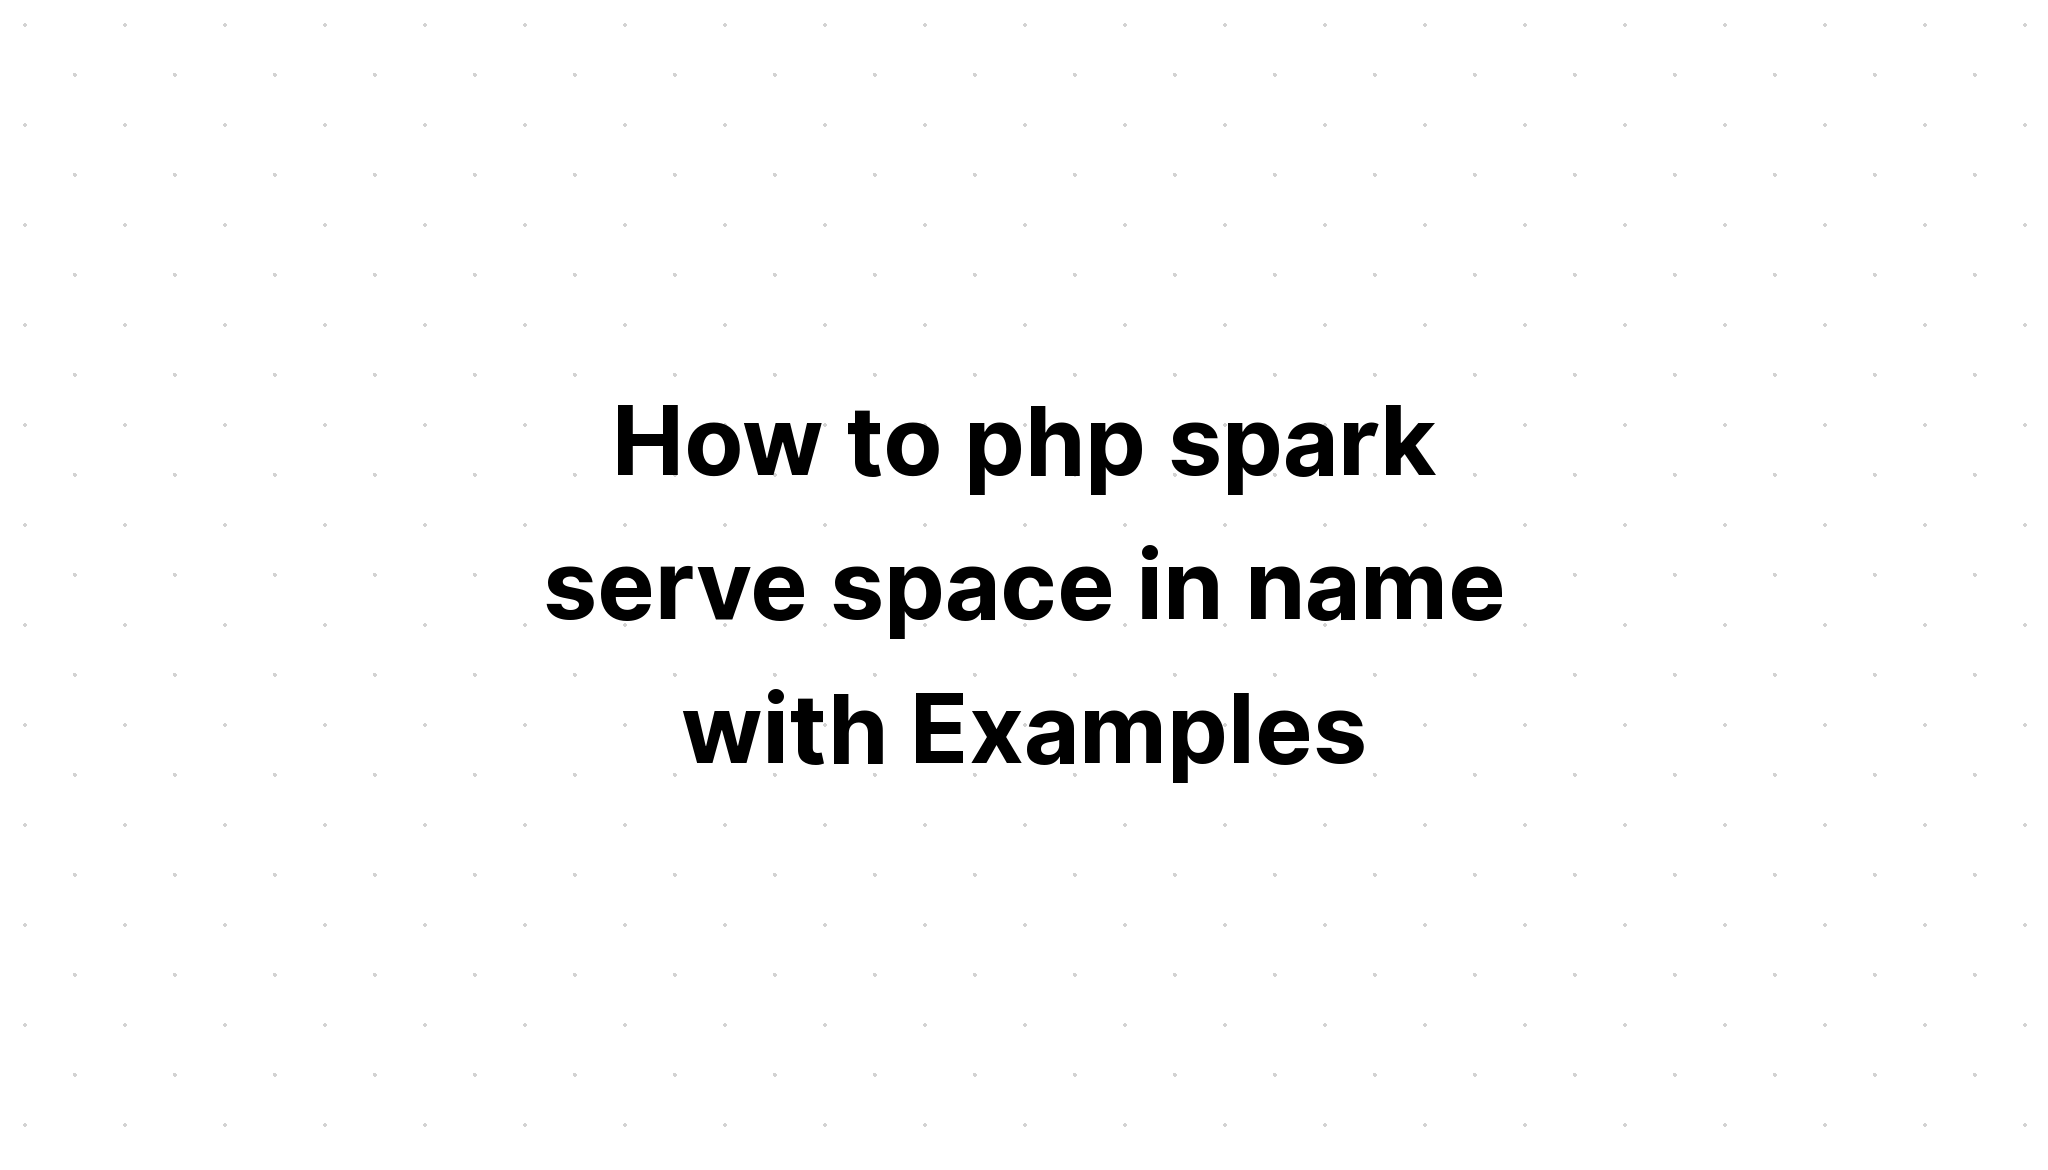 Cách php spark phục vụ không gian trong tên với các ví dụ